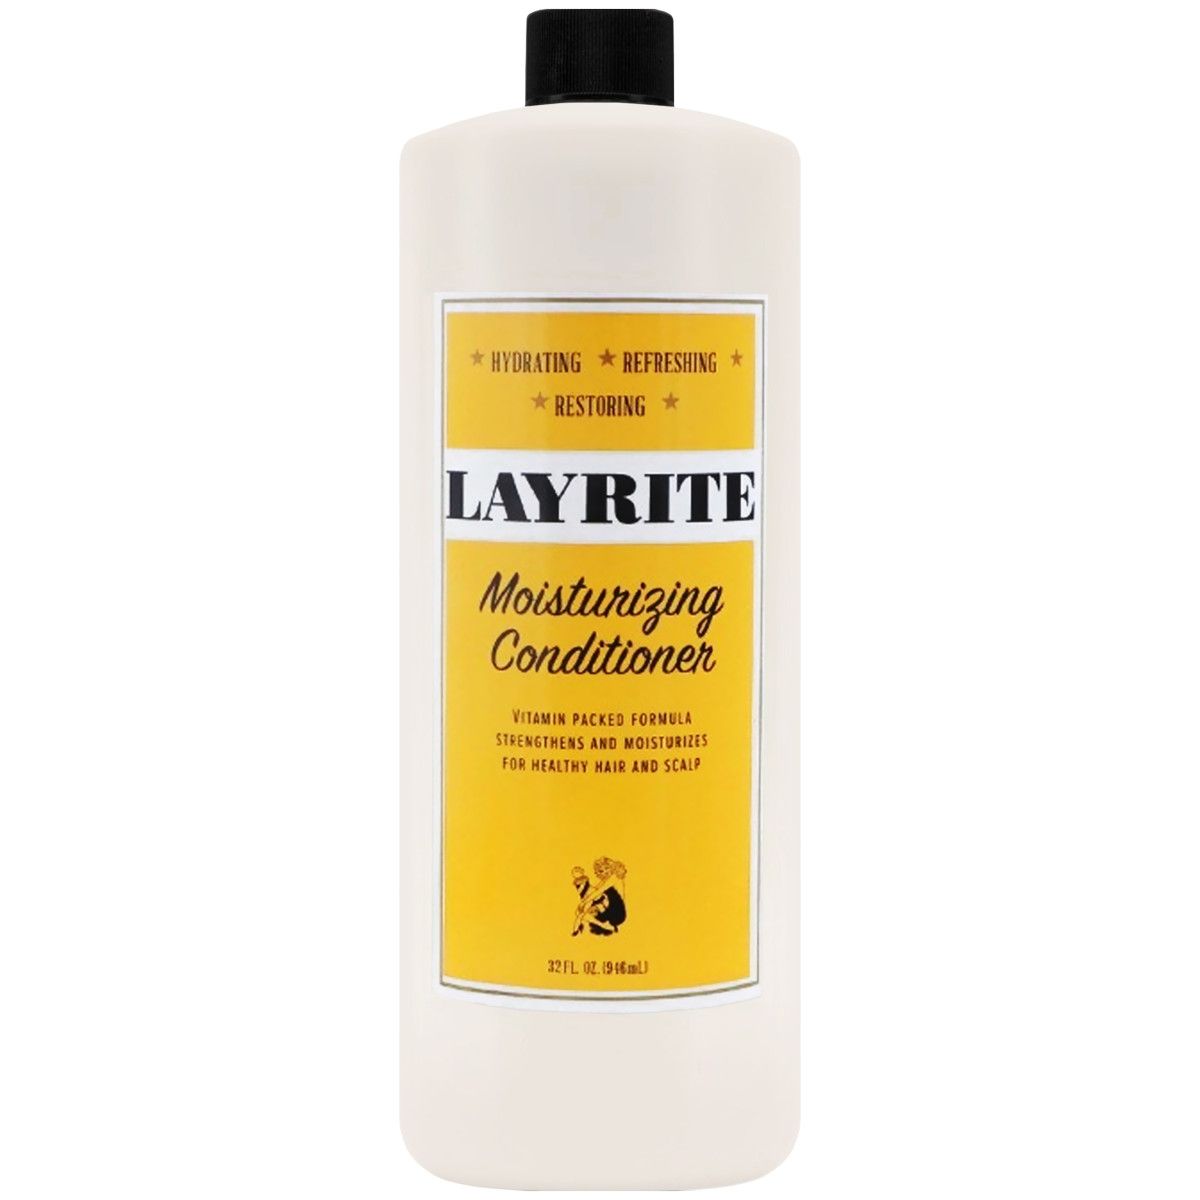 Layrite Moisturizing Conditioner - odżywka nawilżająca do włosów, 946ml